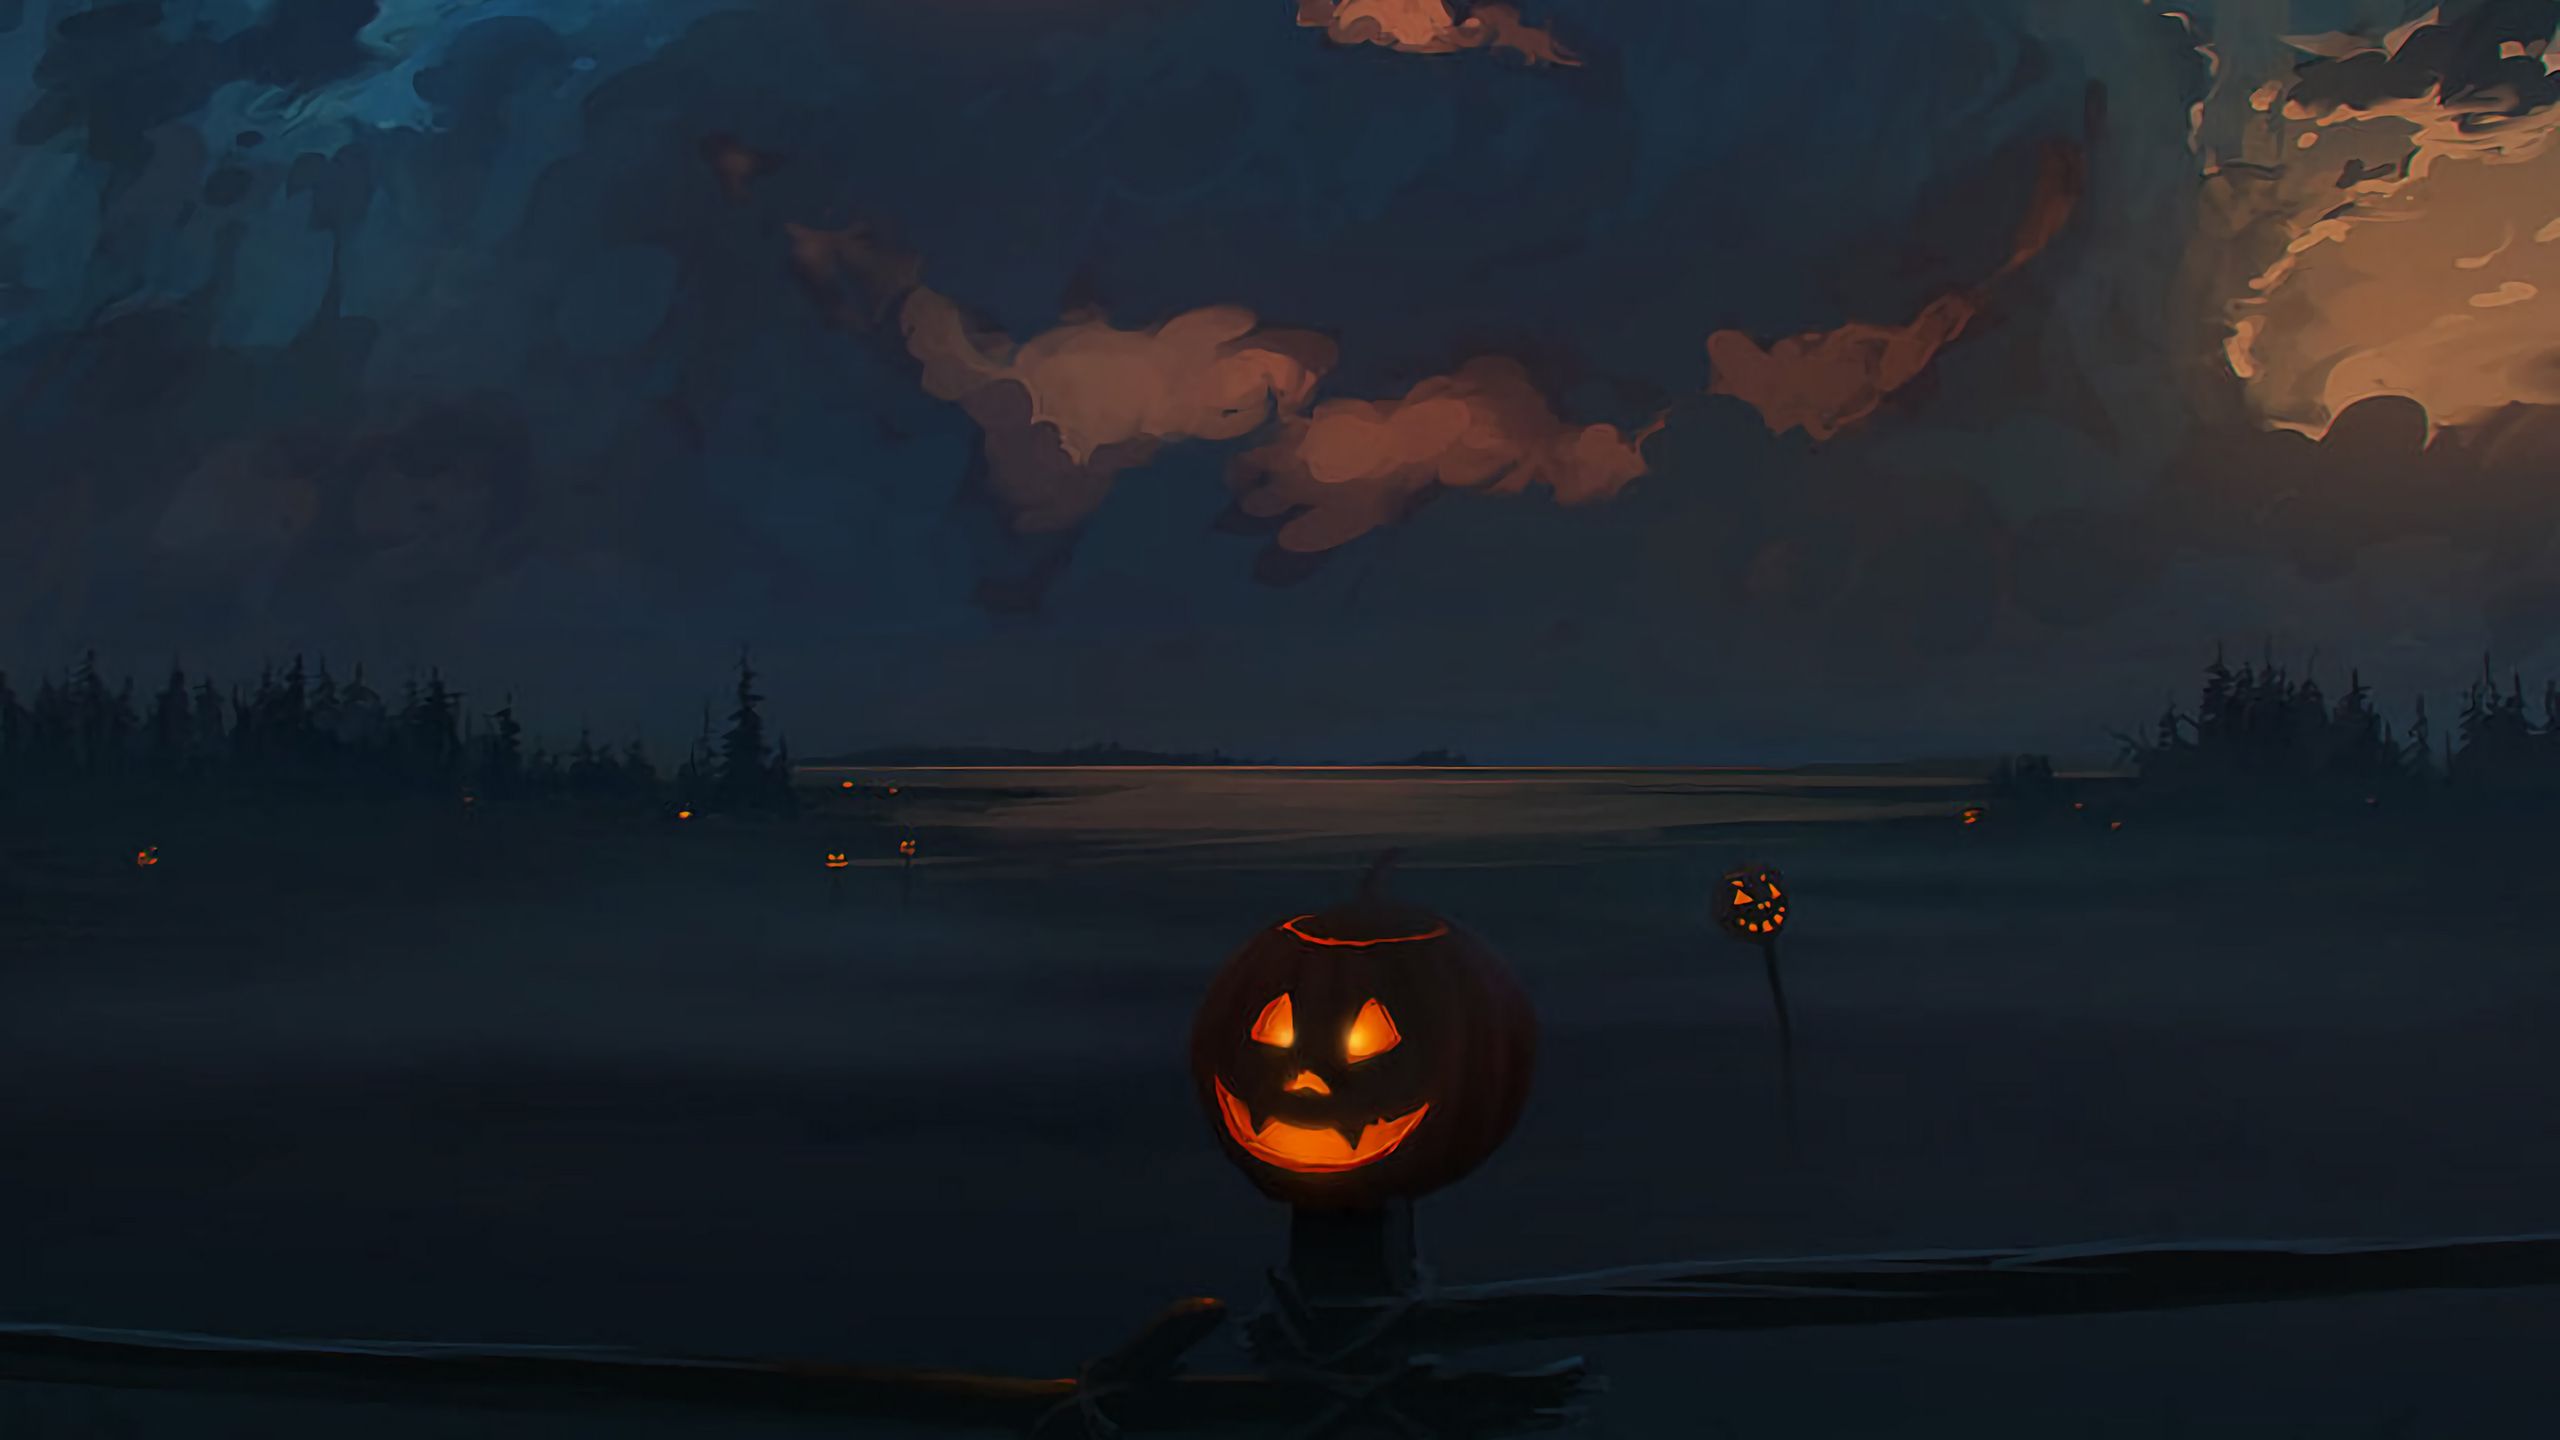 Download wallpaper 2560x1440 jack o lantern, pumpkin, halloween, art, clouds widescreen 16:9 HD background